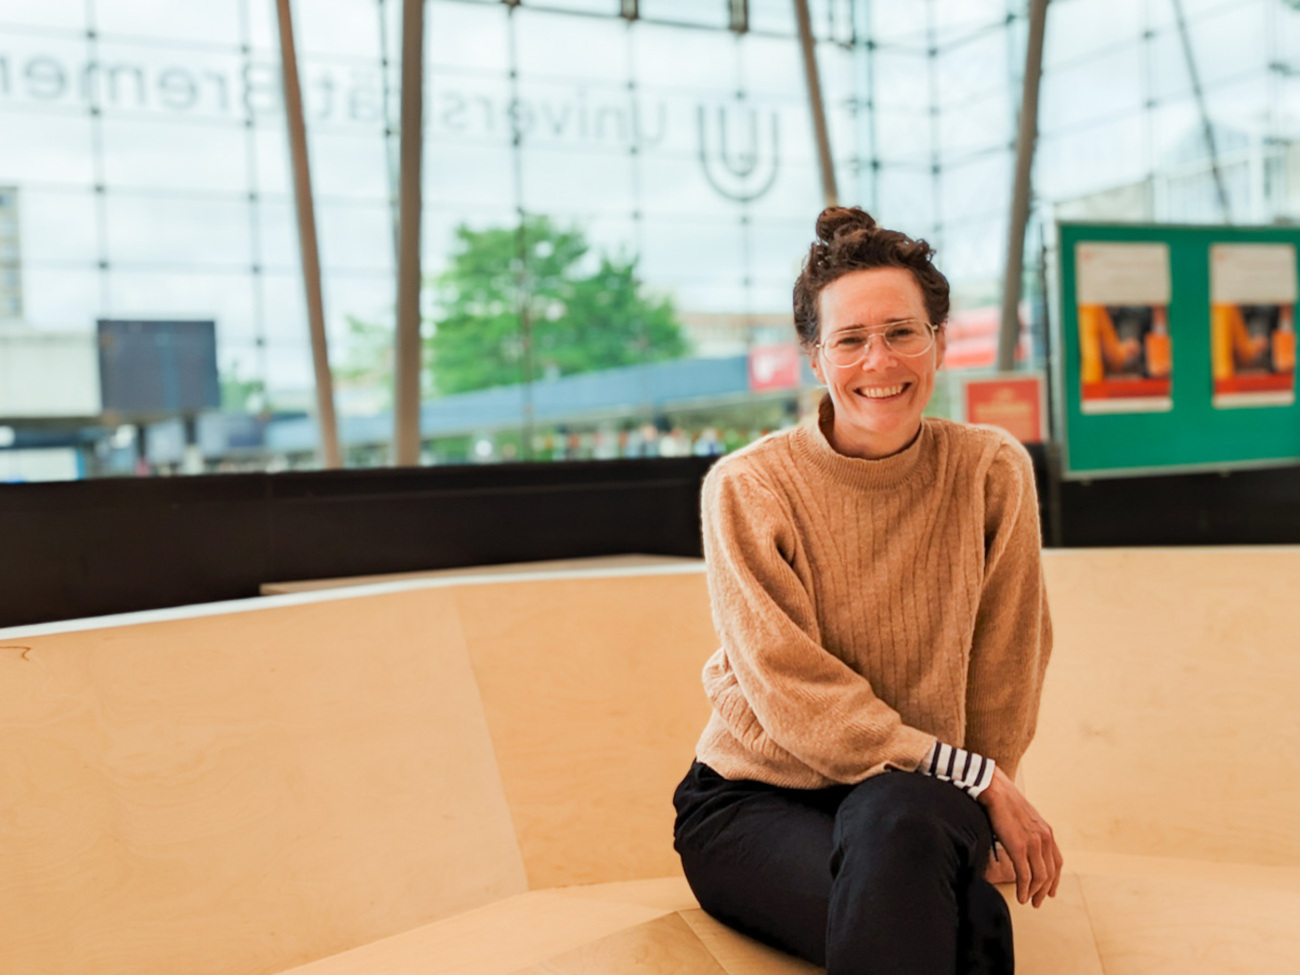 Zu sehen ist die Künstlerin Sarah Lüdemann. Sie sitzt auf dem Kunstwerk “Sitznest” in der Glashalle der Universität Bremen.